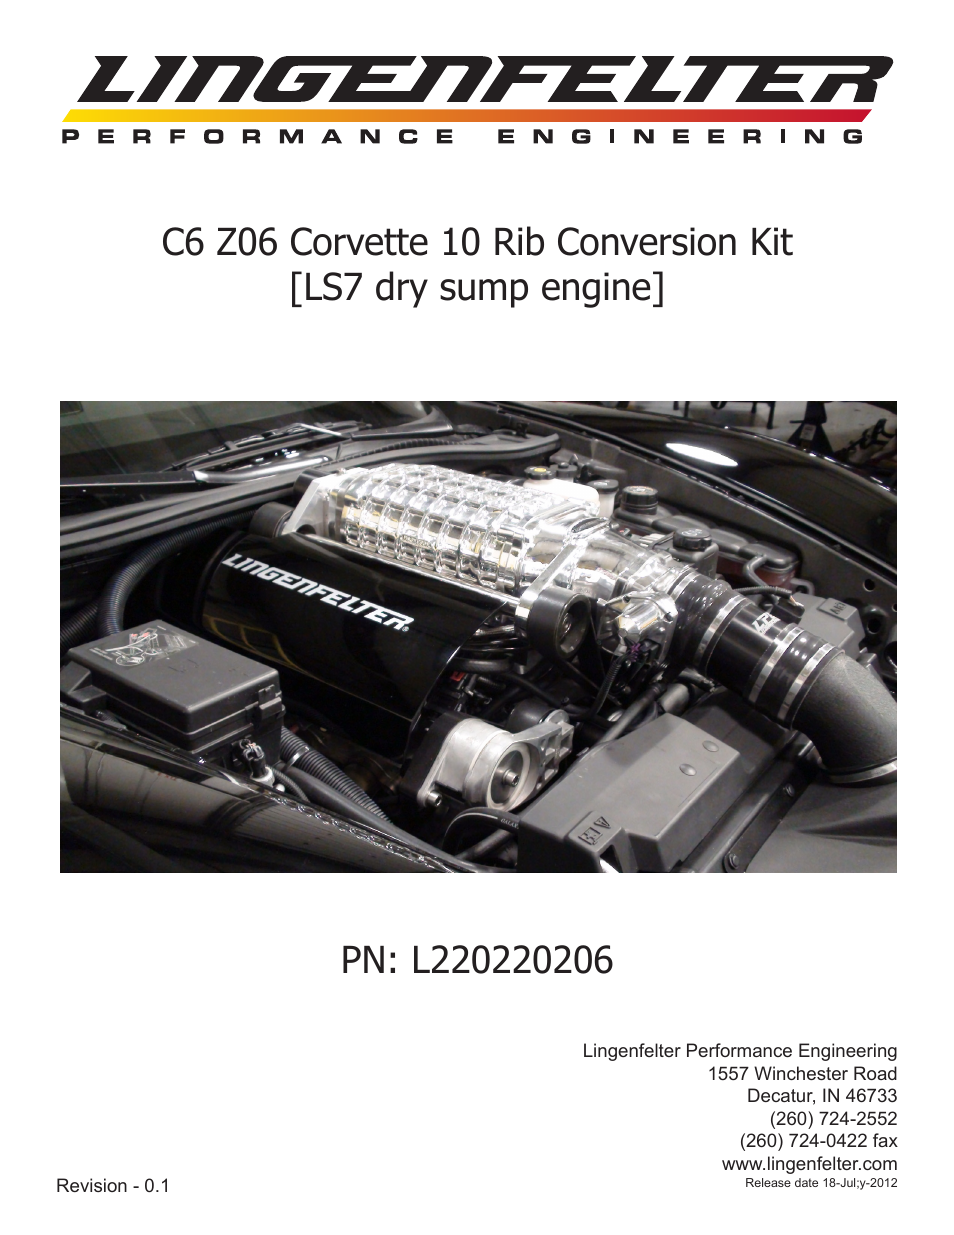 L220220206 Lingenfelter C6 Z06 Corvette 10 Rib Supercharger Drive Kit v0.1